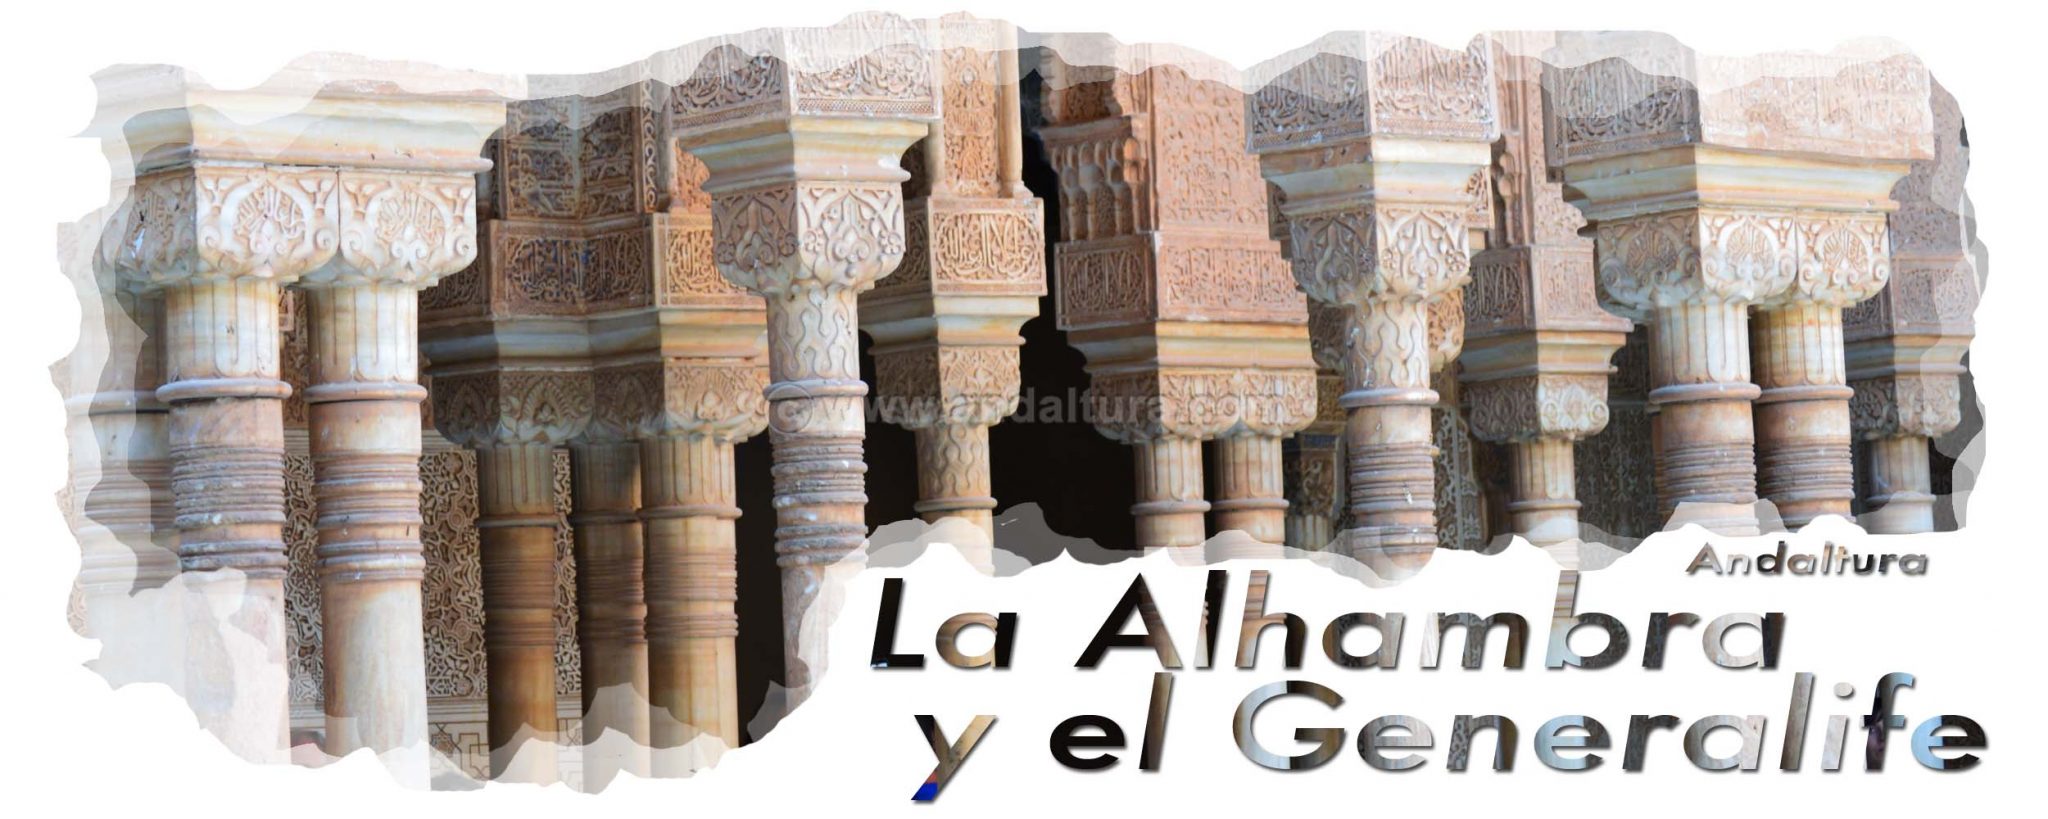 La Alhambra y el Generalife: Columnas nazaríes en el Palacio de los Leones